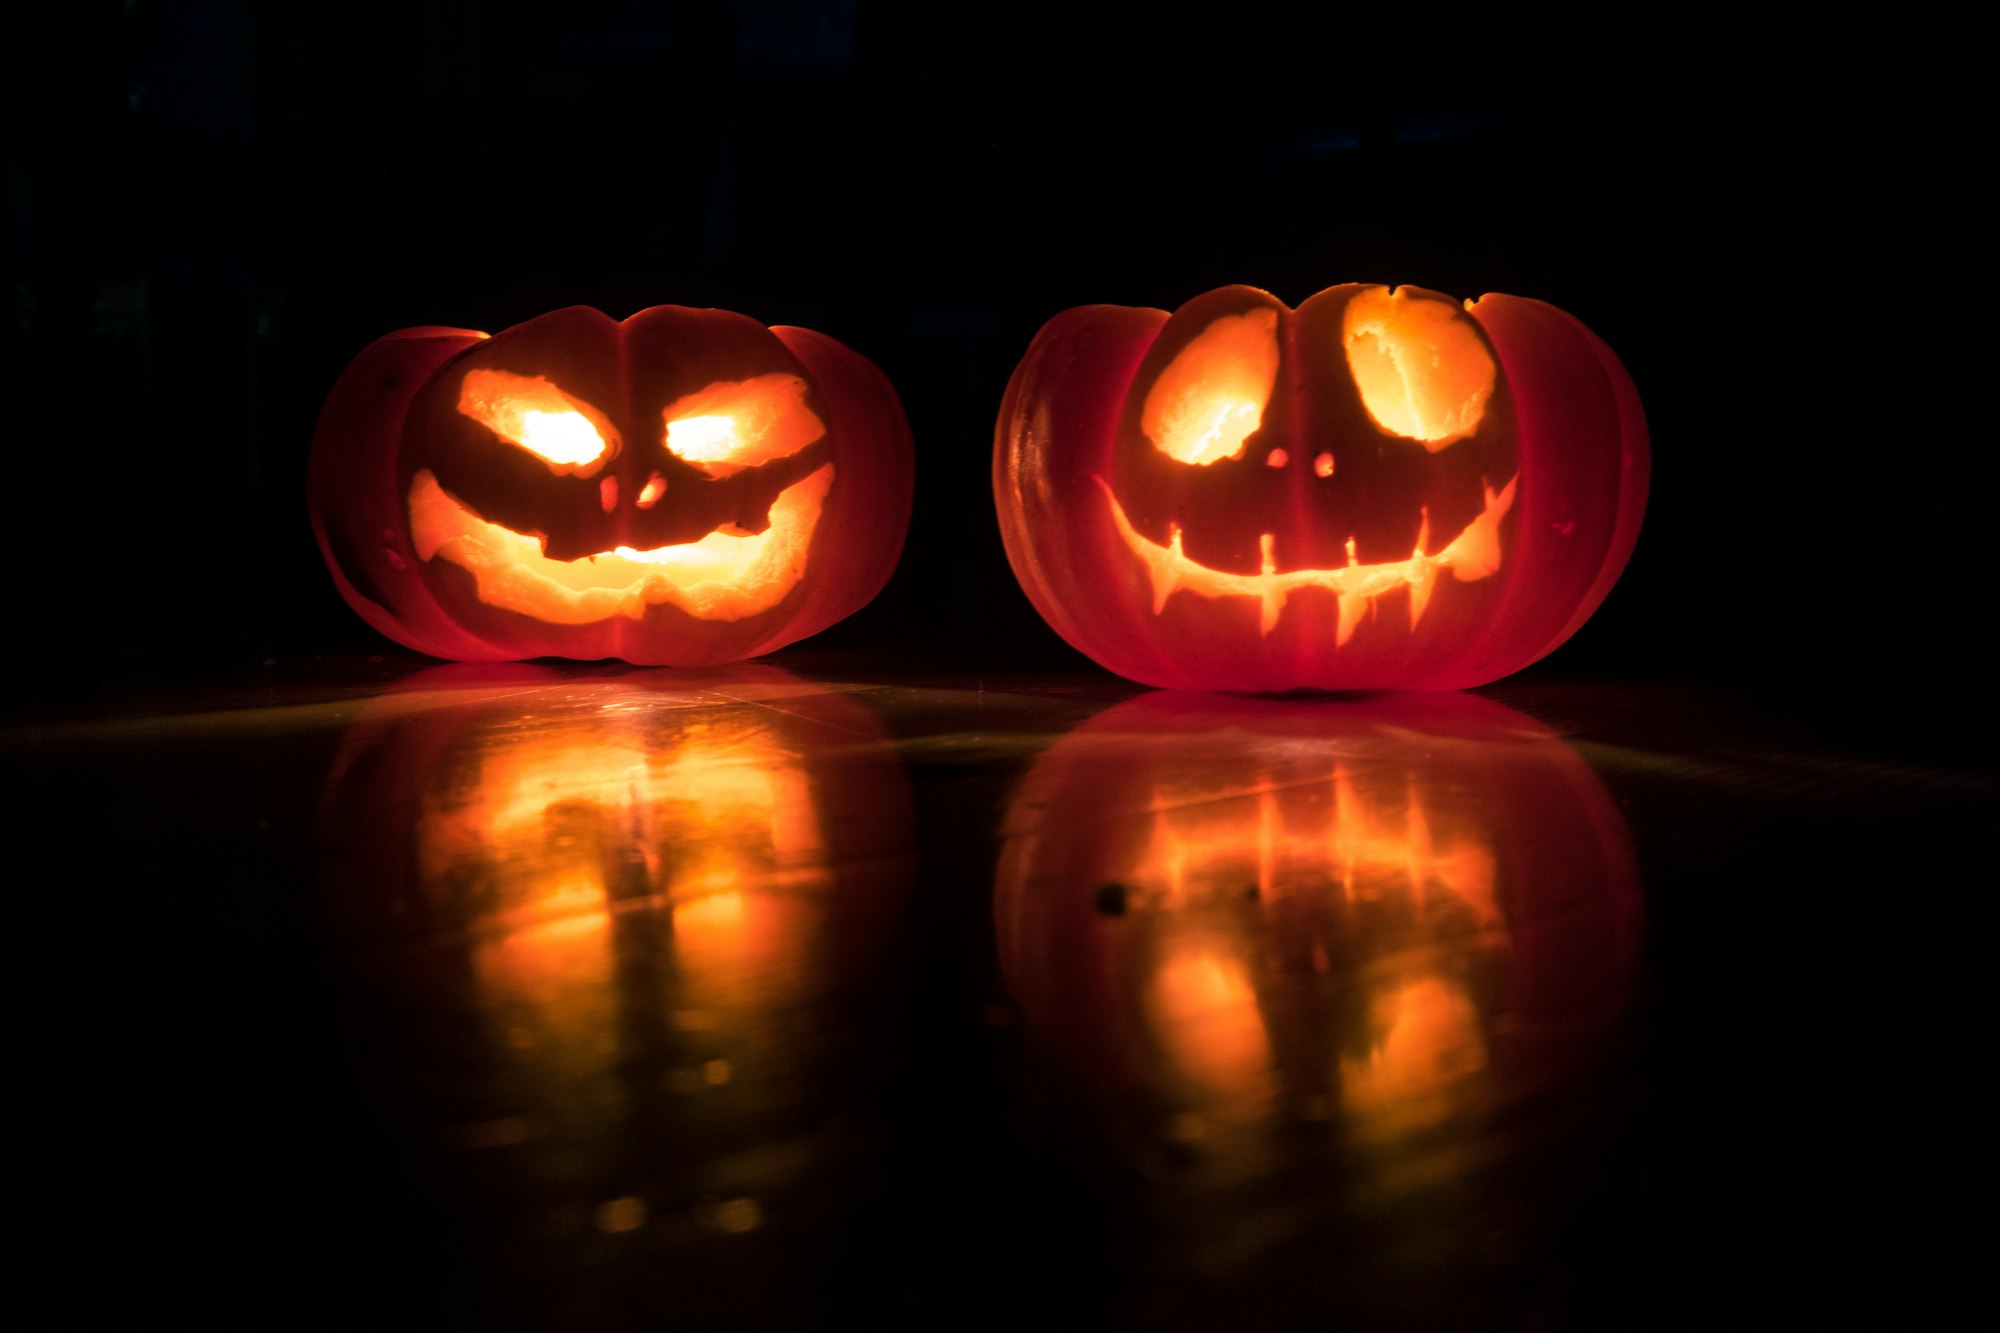 October 31st, Spooky Halloween